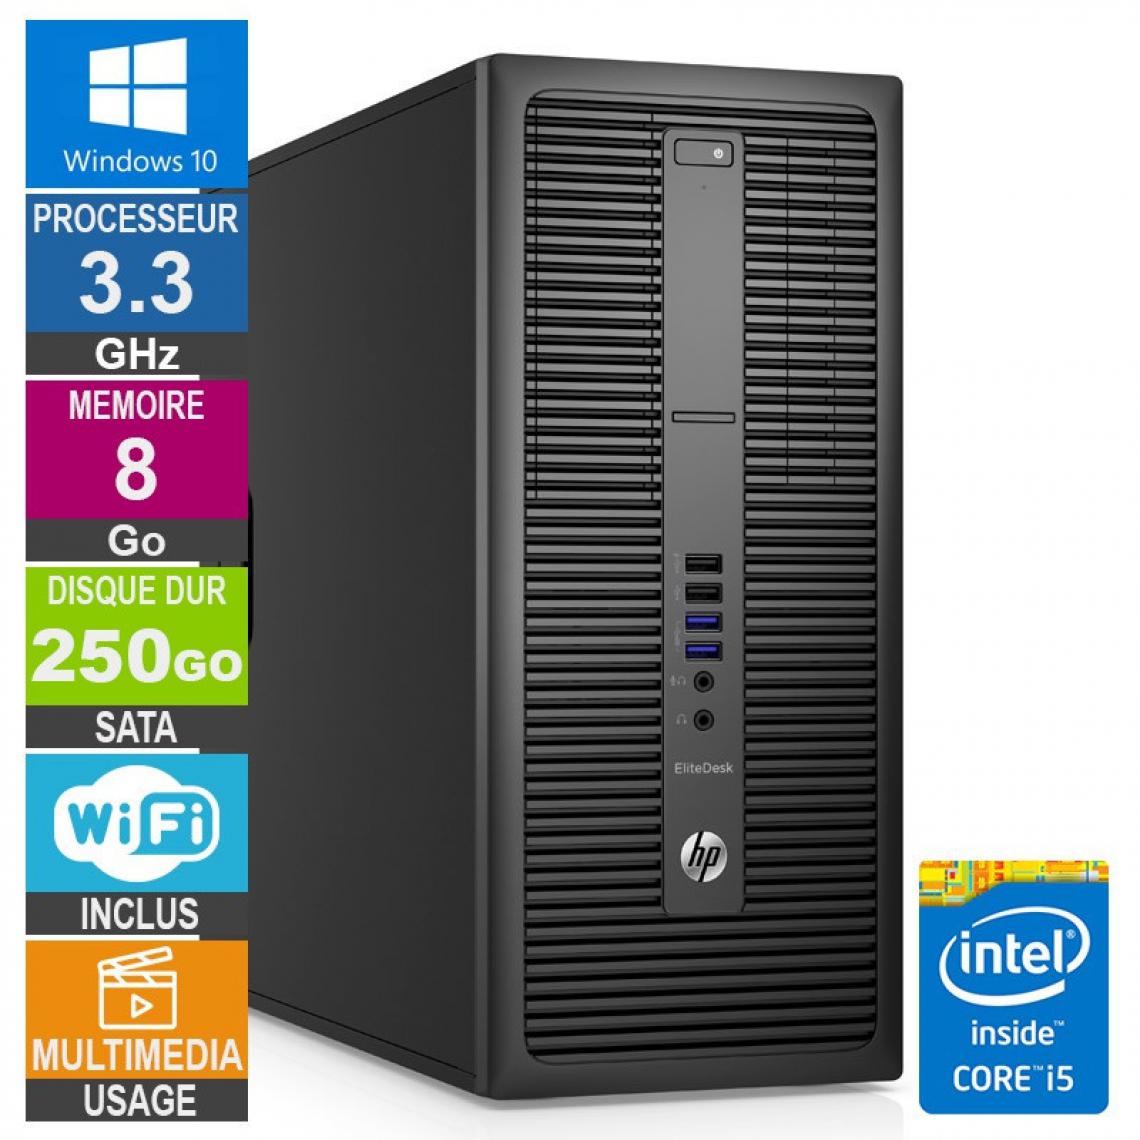 Hp - PC HP EliteDesk 800 G2 TWR i5-6400 3.30GHz 8Go/250Go Wifi W10 - PC Fixe